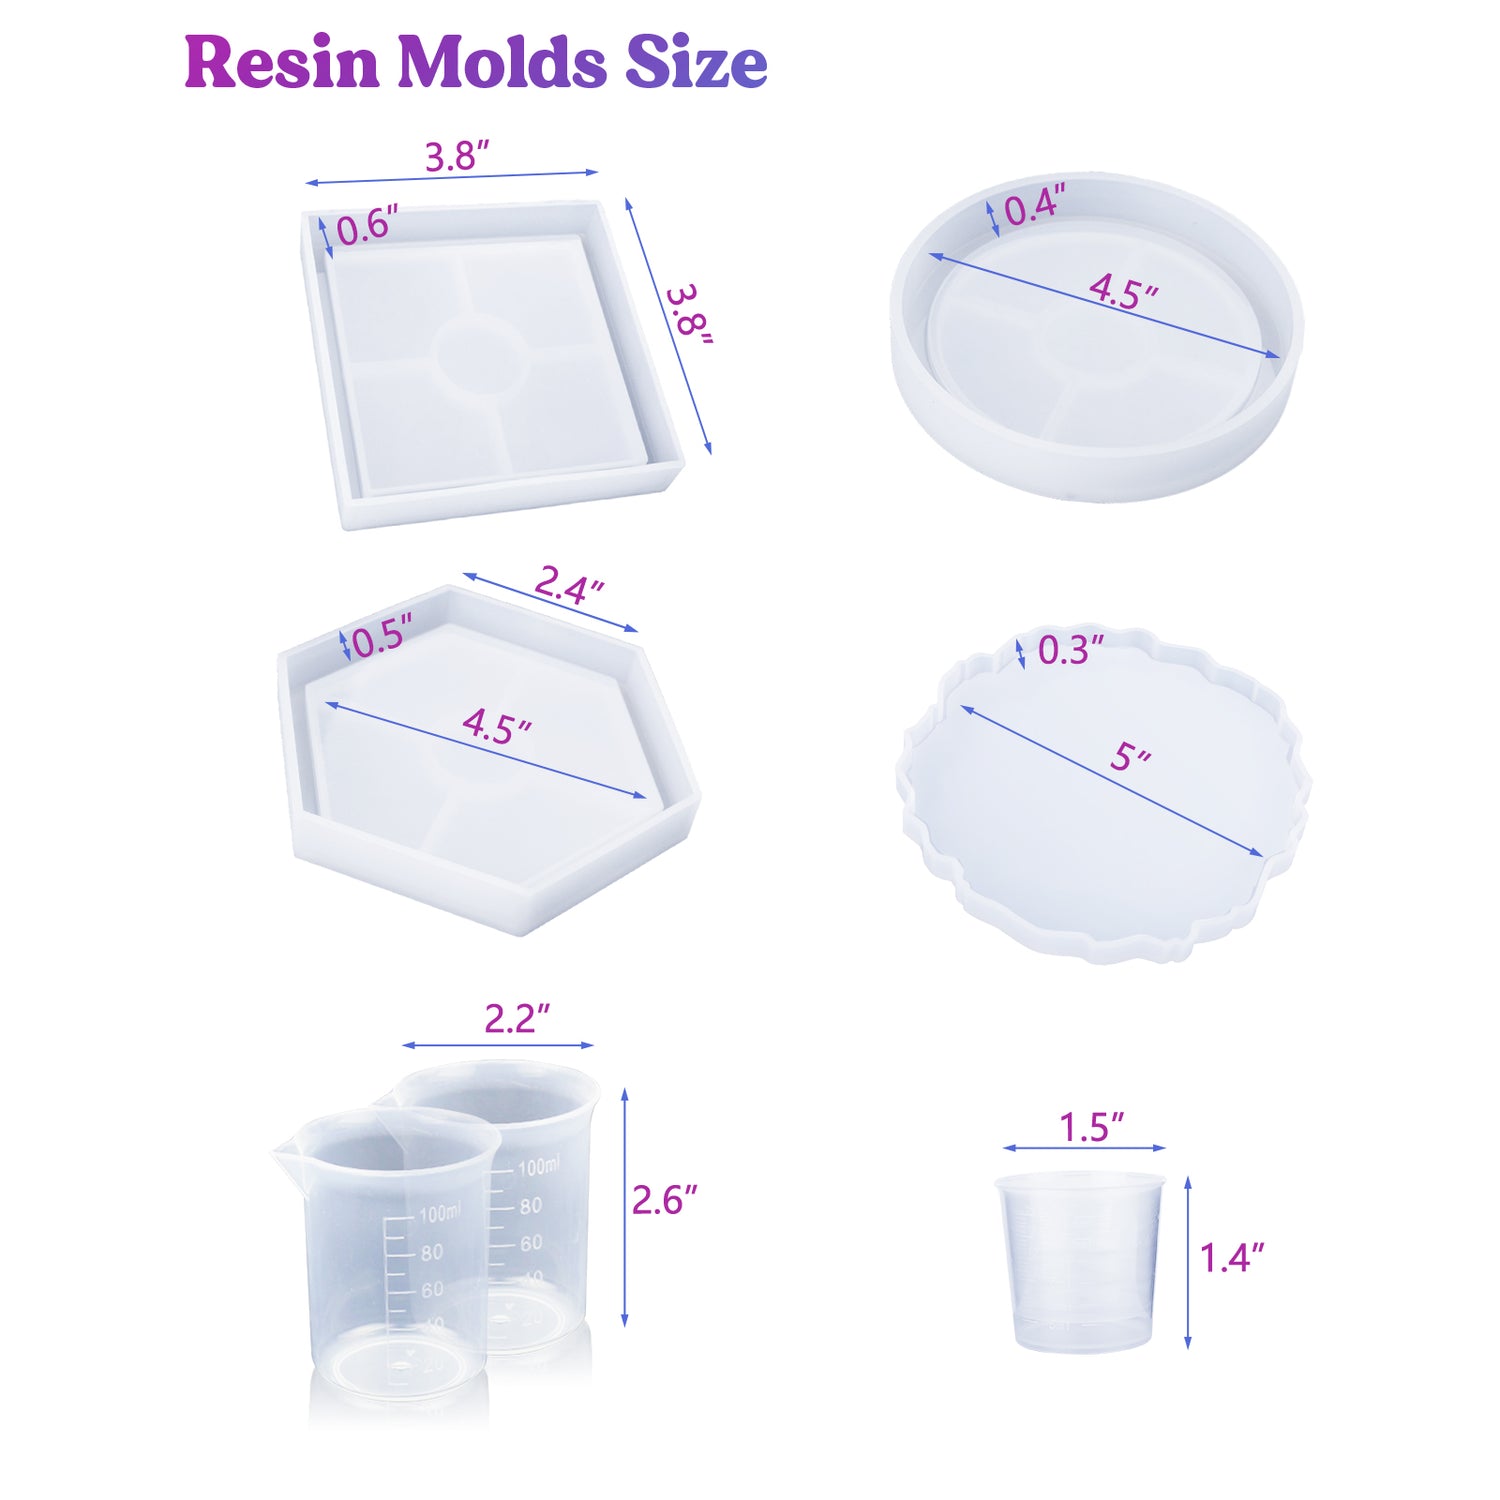 Let's Resin Epoxy Resin Starter Kit for Beginners, 44oz Resin Art Kit for Cra